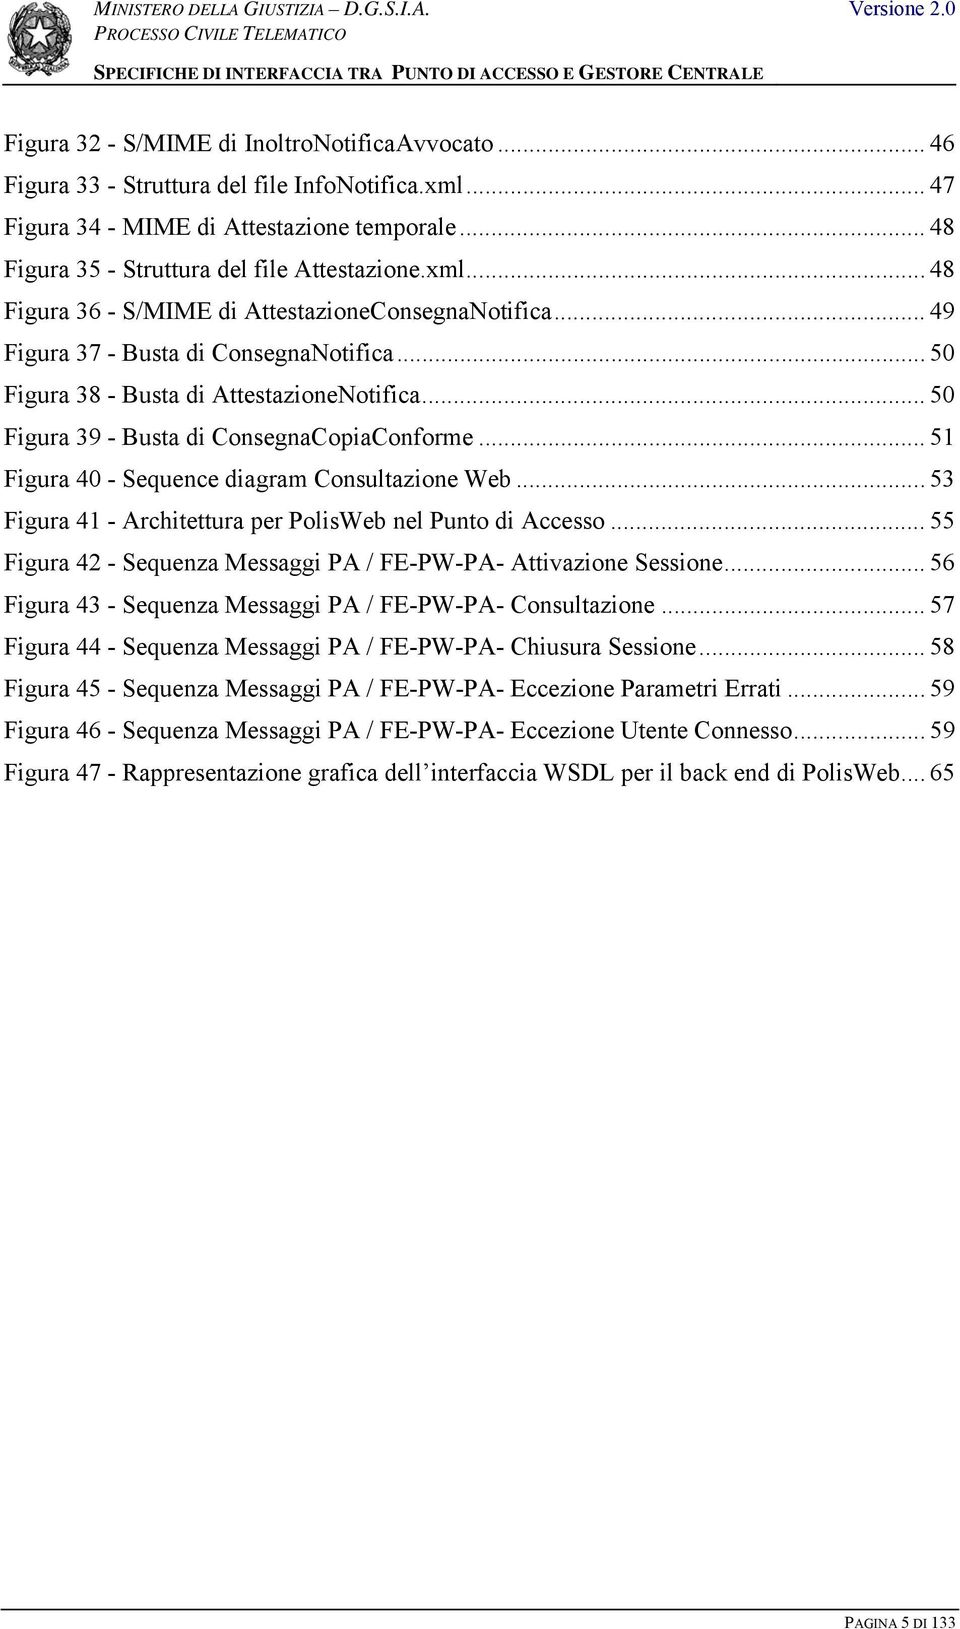 .. 51 Figura 40 - Sequence Consultazione Web... 53 Figura 41 - Architettura per PolisWeb nel Punto di Accesso... 55 Figura 42 - Sequenza Messaggi PA / FE-PW-PA- Attivazione Sessione.